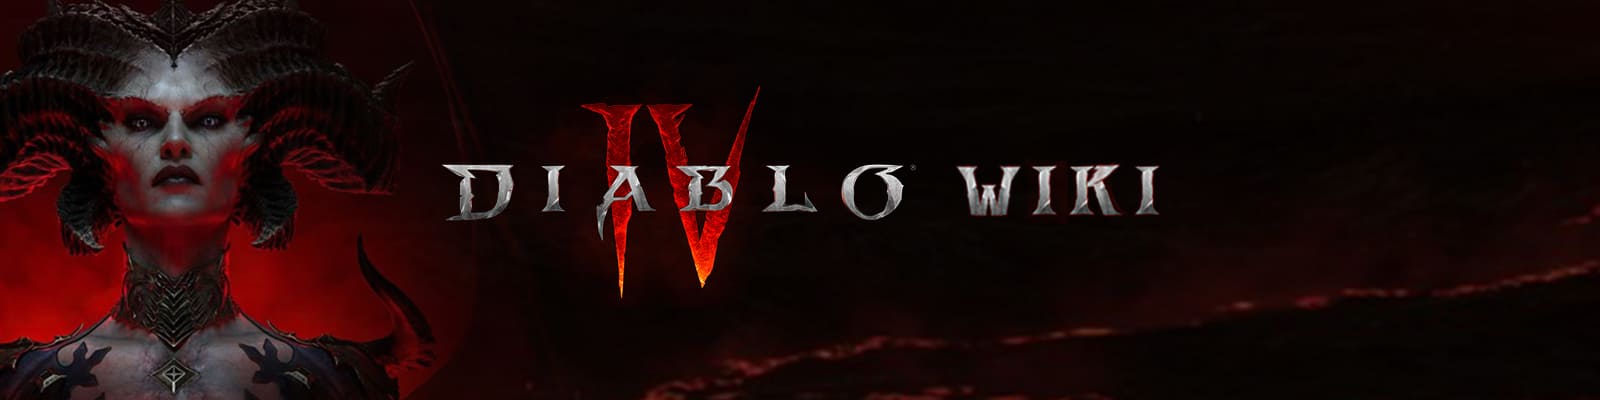 Diablo IV, Diablo Wiki